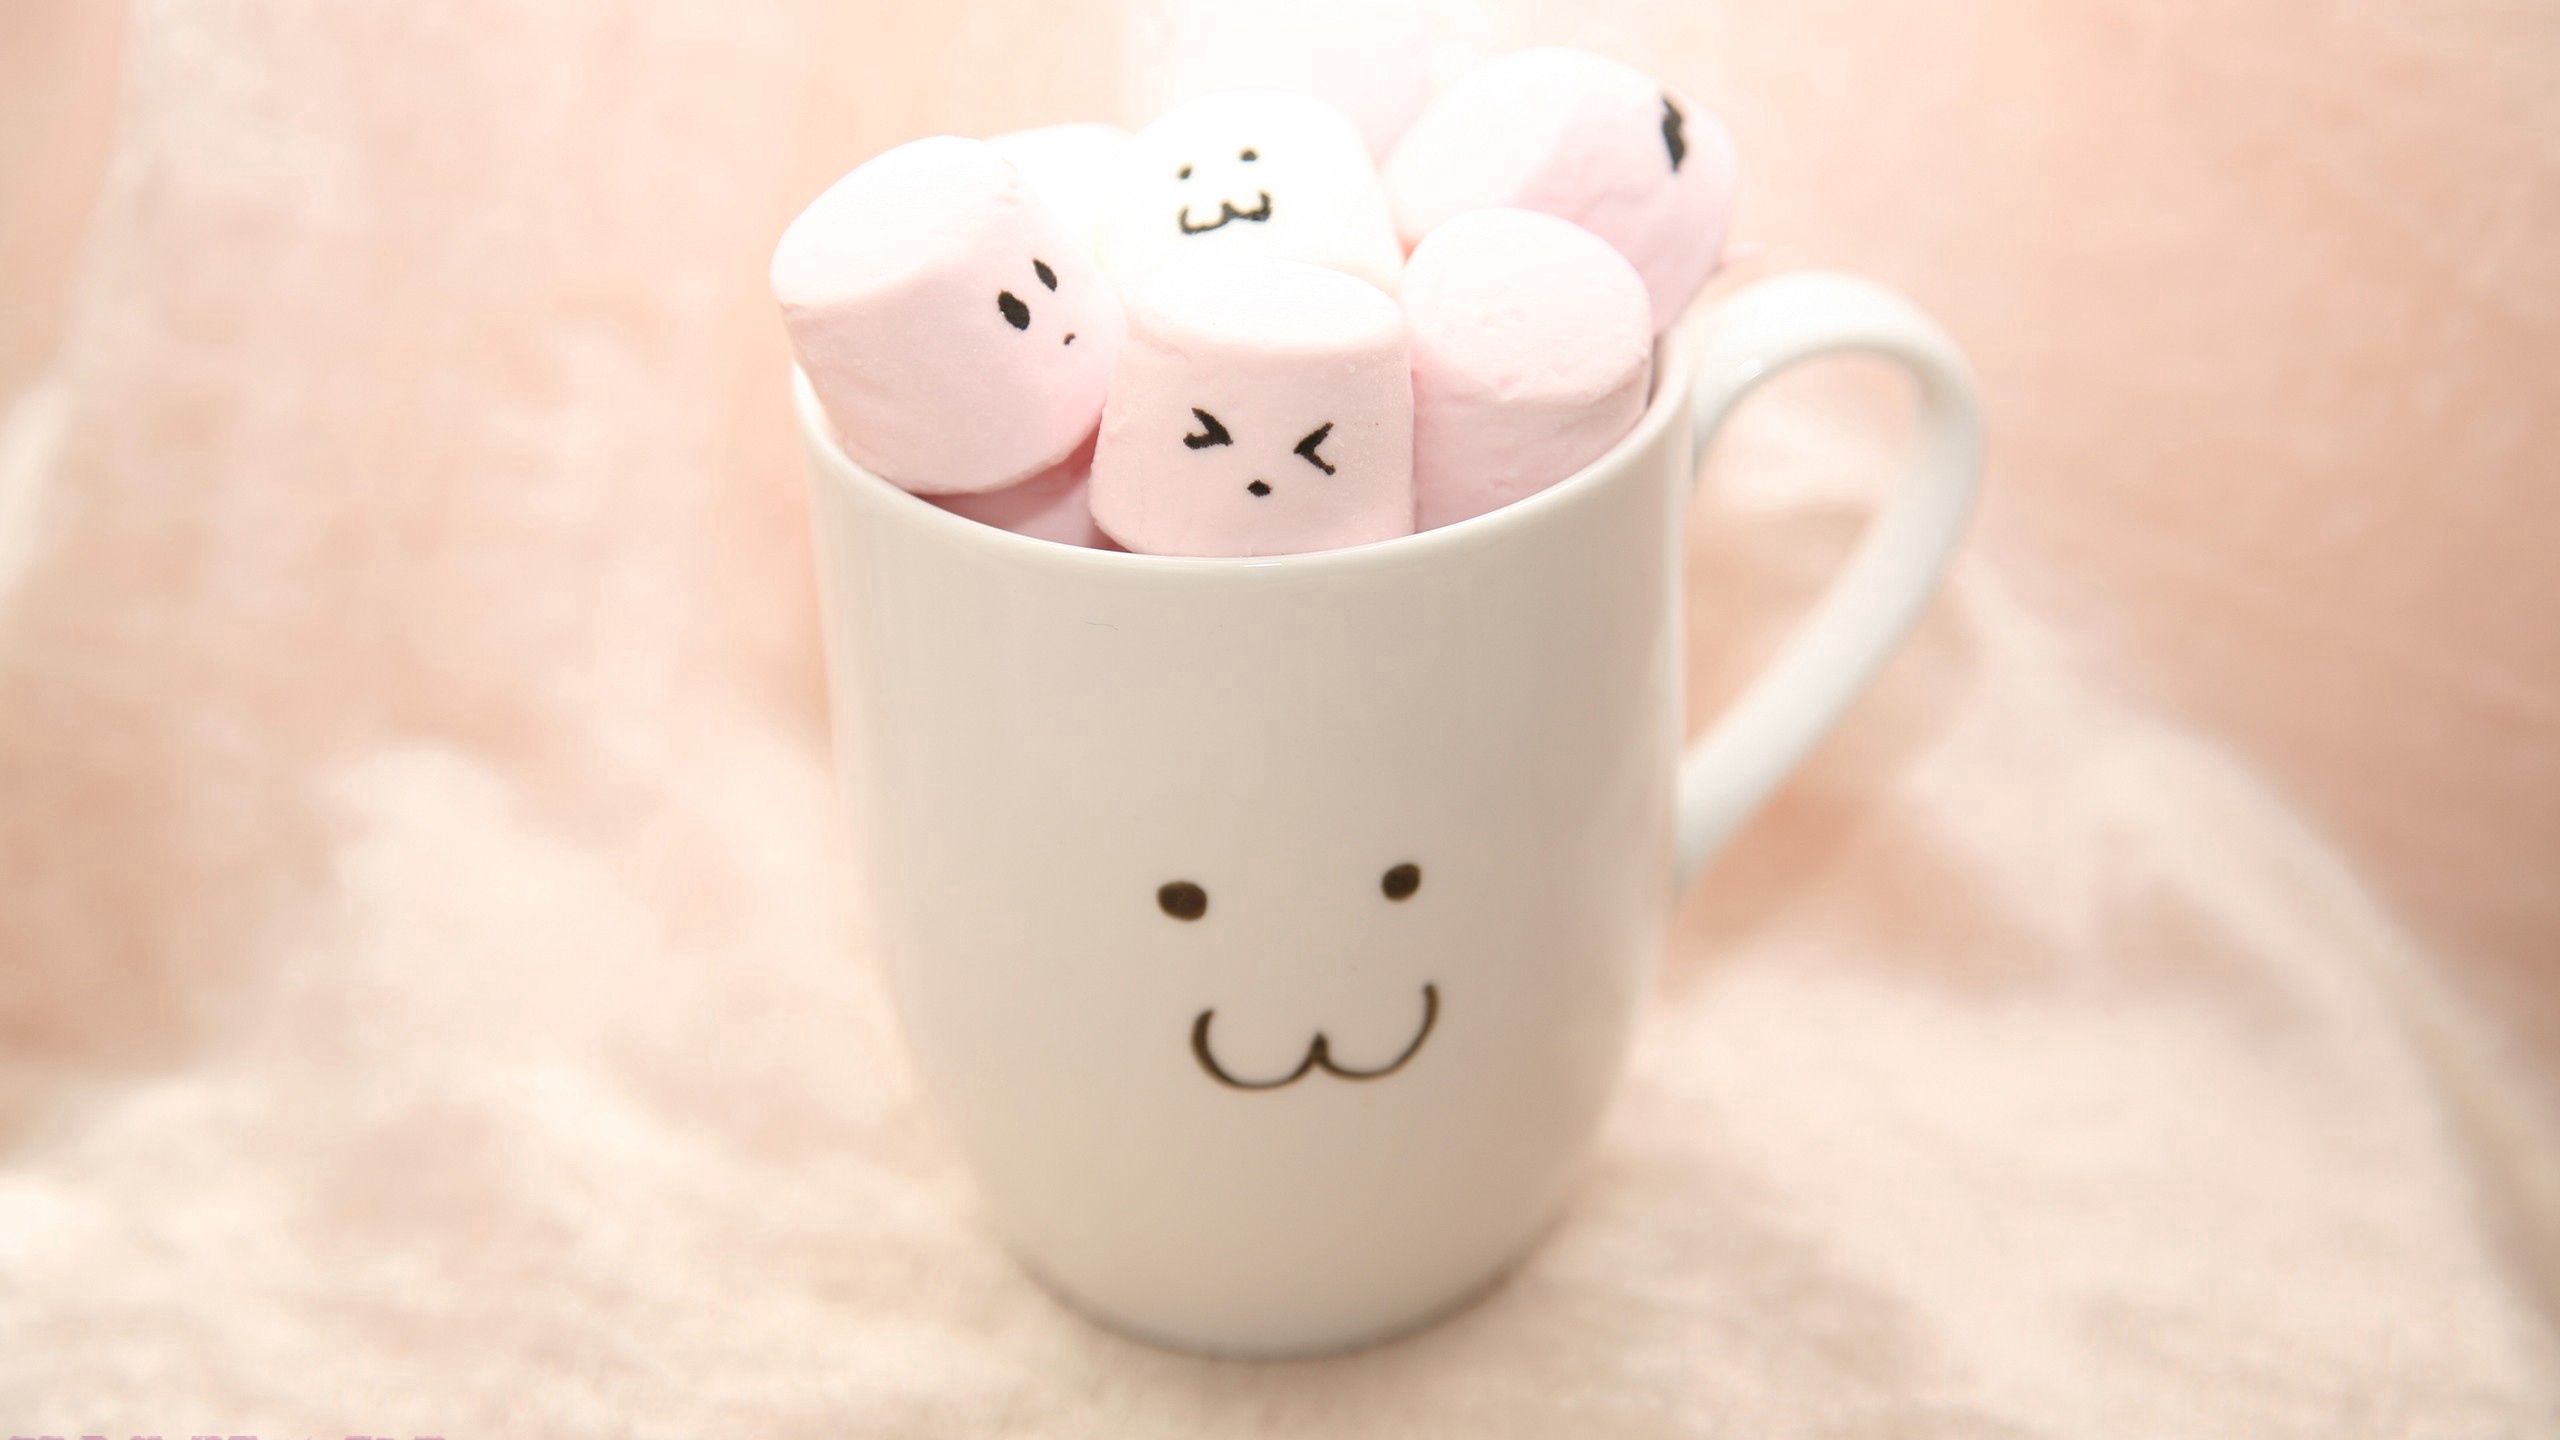 smilies, smiles, miscellanea, miscellaneous, cup, marshmallow, zephyr